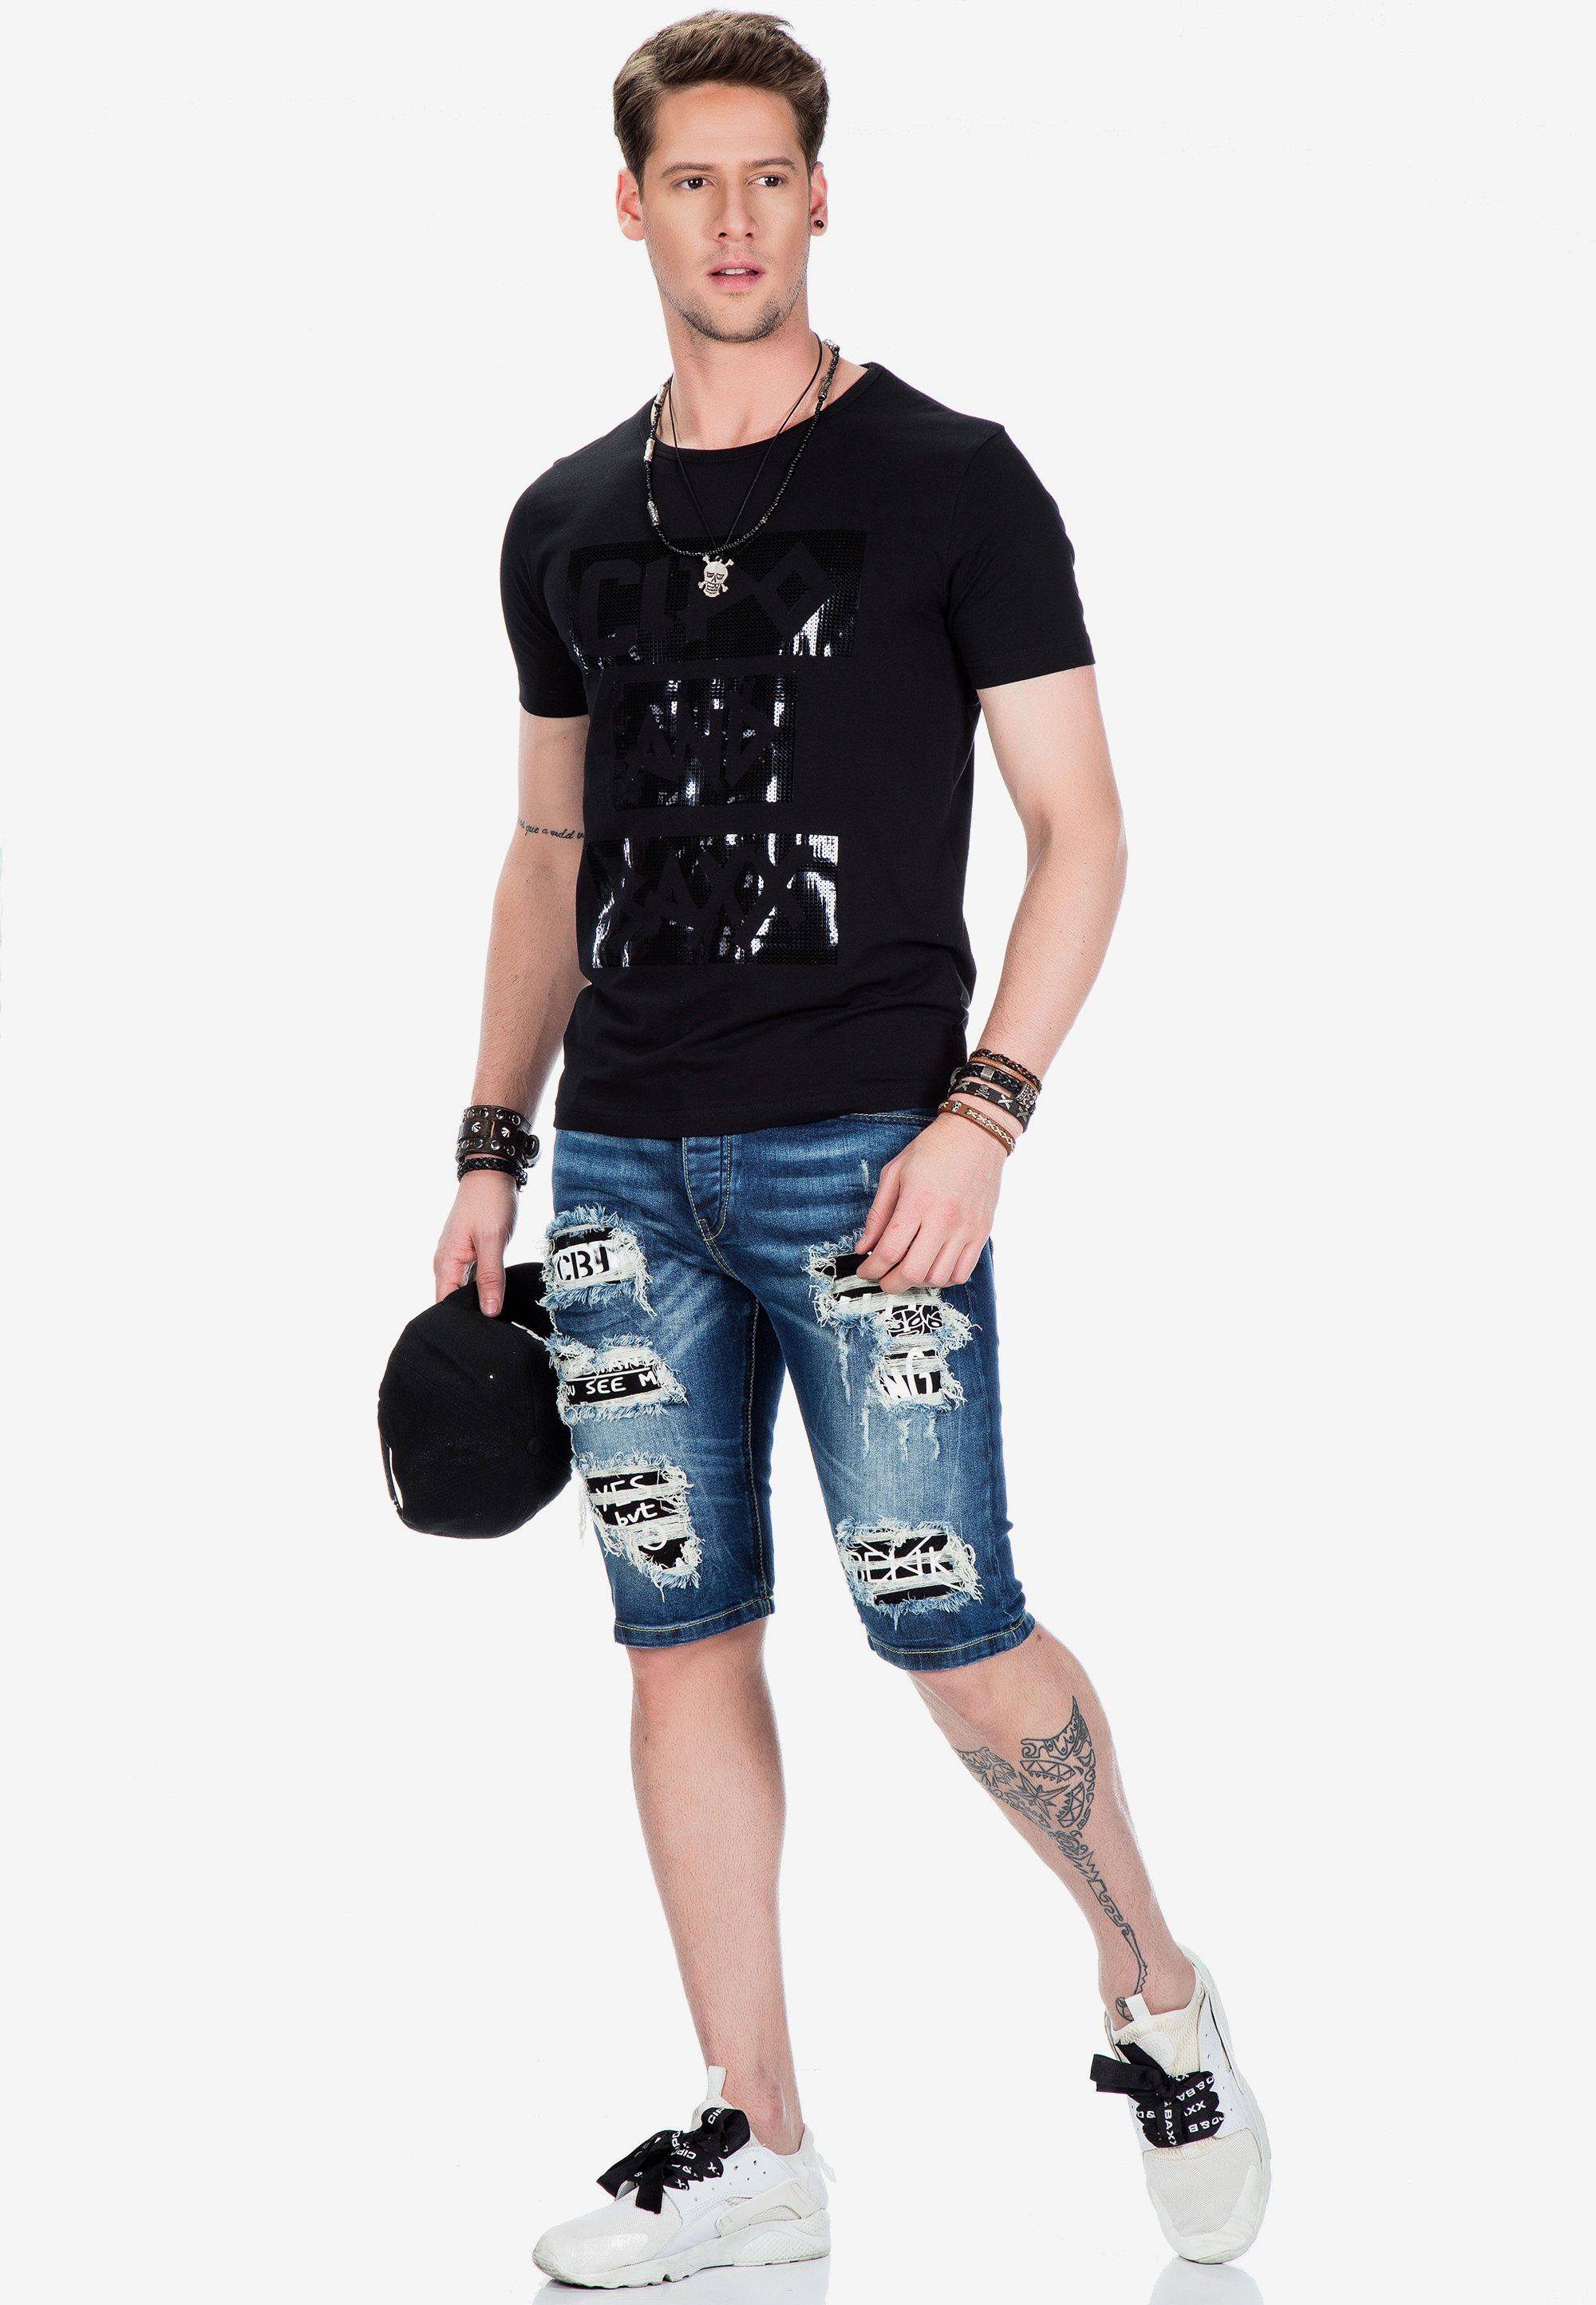 Baxx Foliendruck & schwarz glänzendem mit Cipo T-Shirt